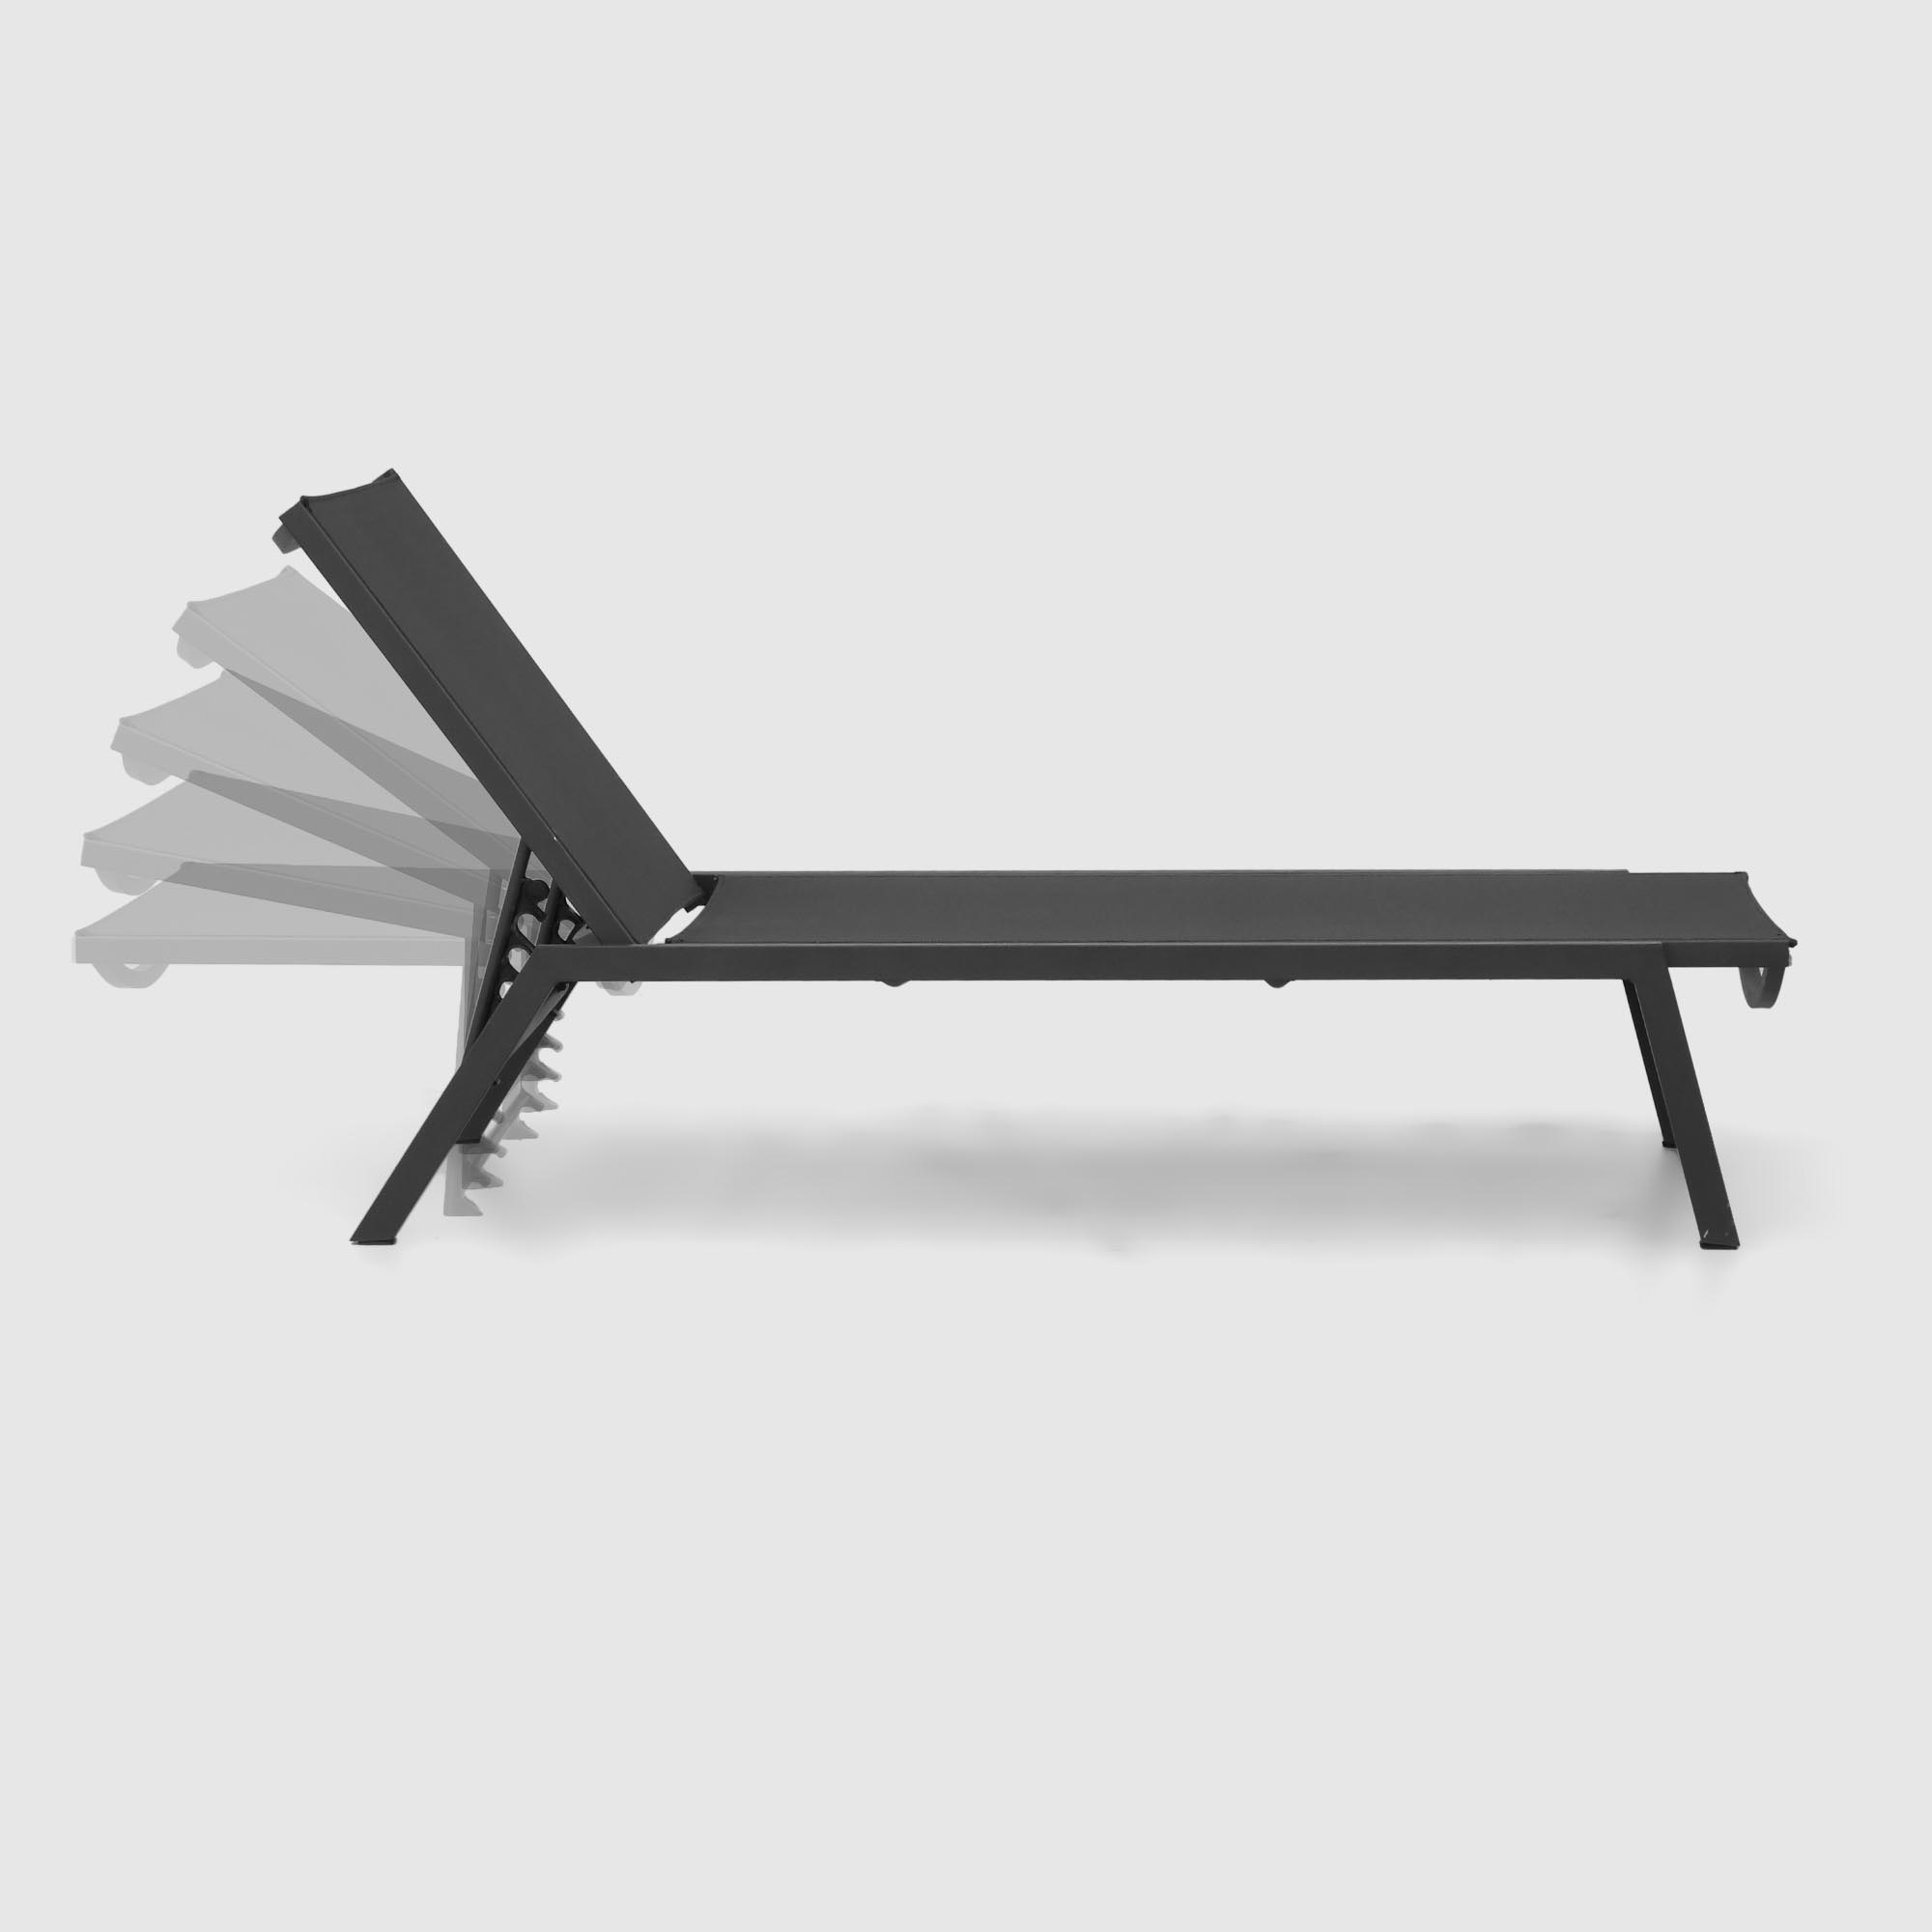 Комплект мебели Emek garden столик и два шезлонга 3 предмета, цвет черный - фото 4